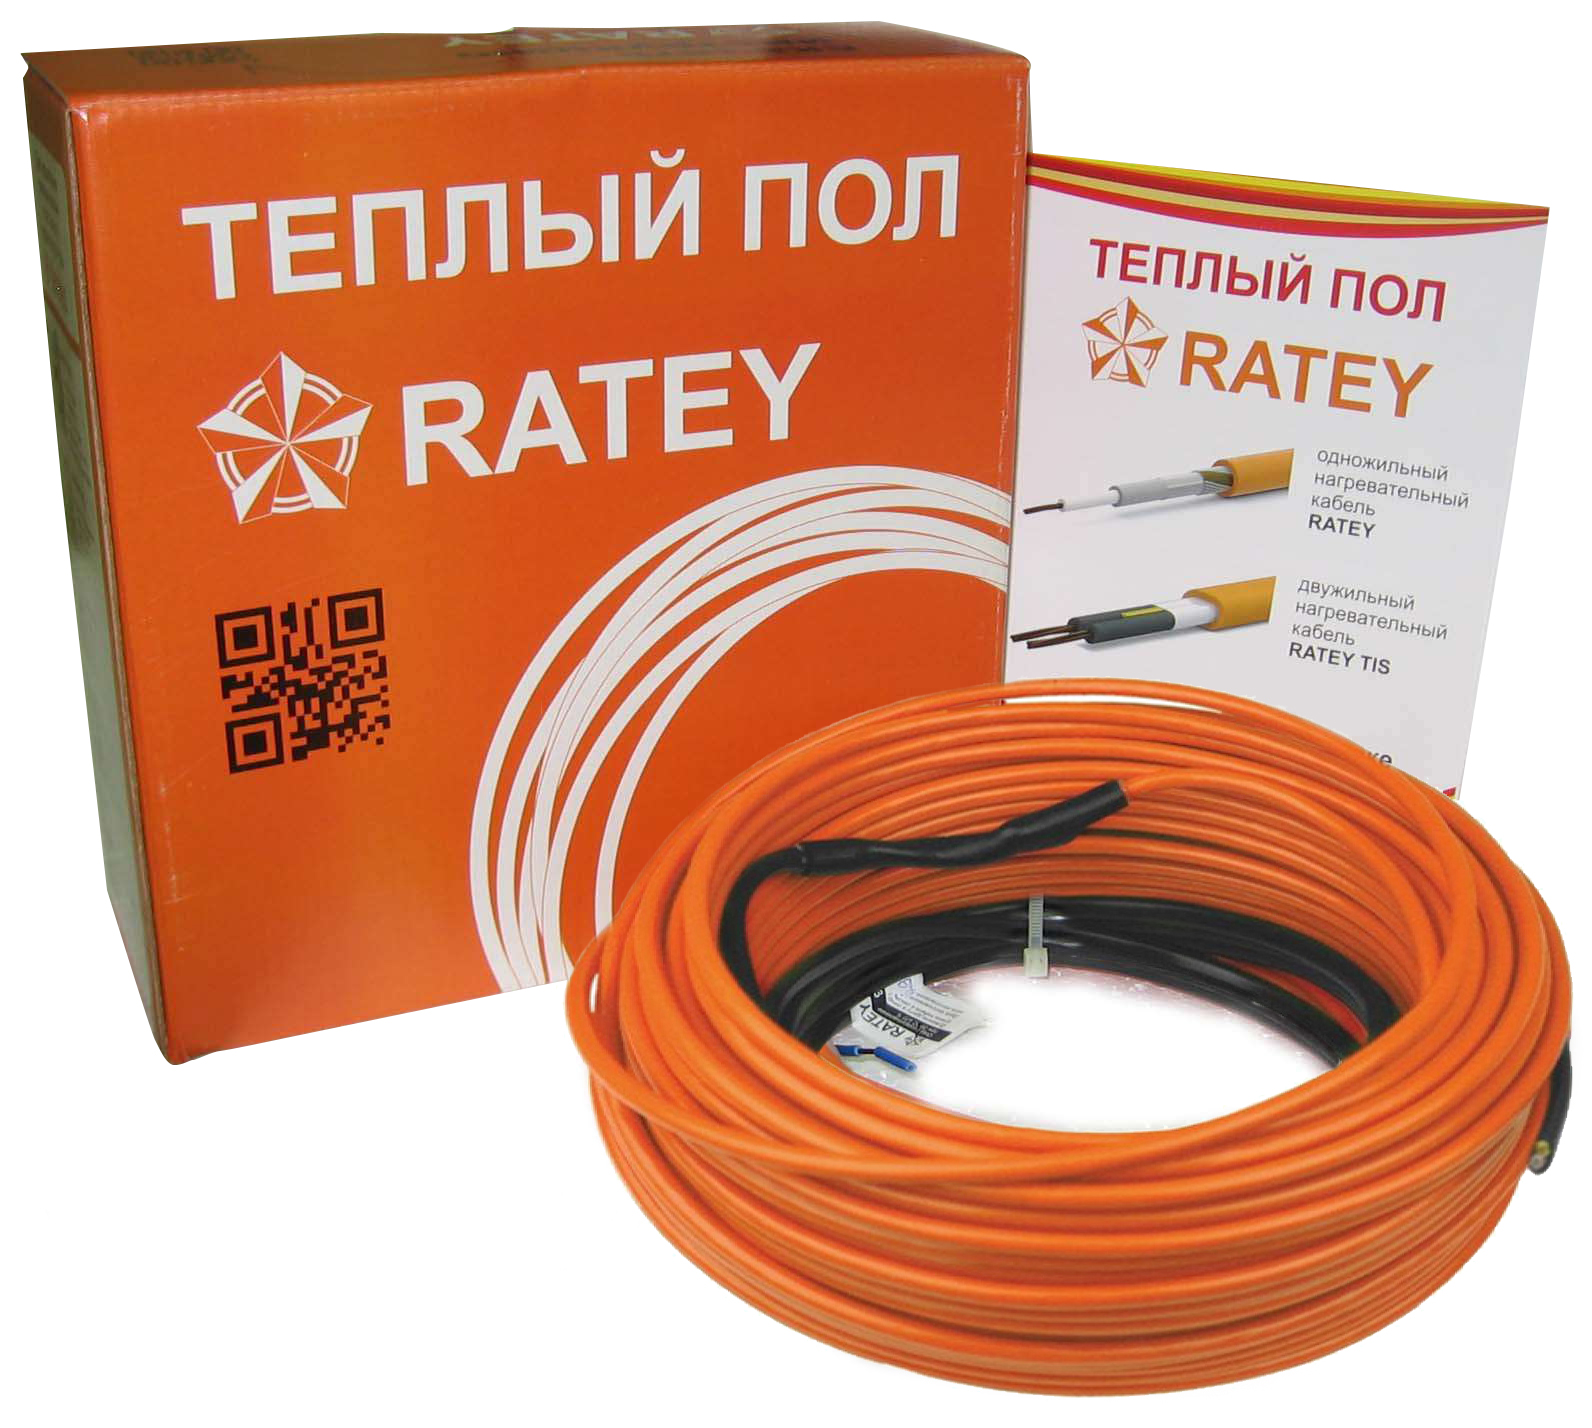 Электрический теплый пол Ratey RD1 0.485 в интернет-магазине, главное фото